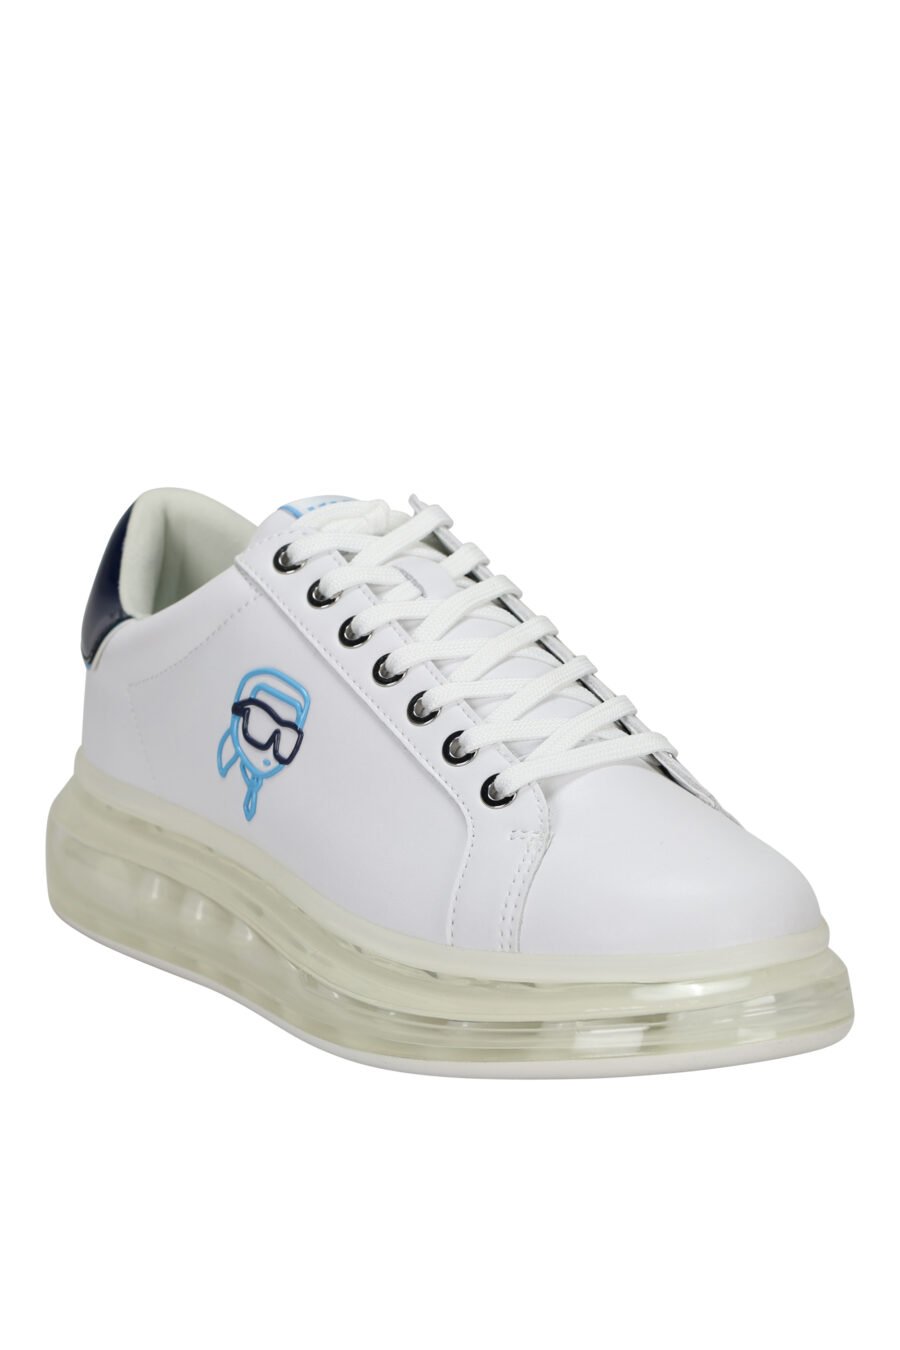 Zapatillas blancas "kapri fushion" con plataforma transparente y minilogo en contorno azul - 5059529396144 1